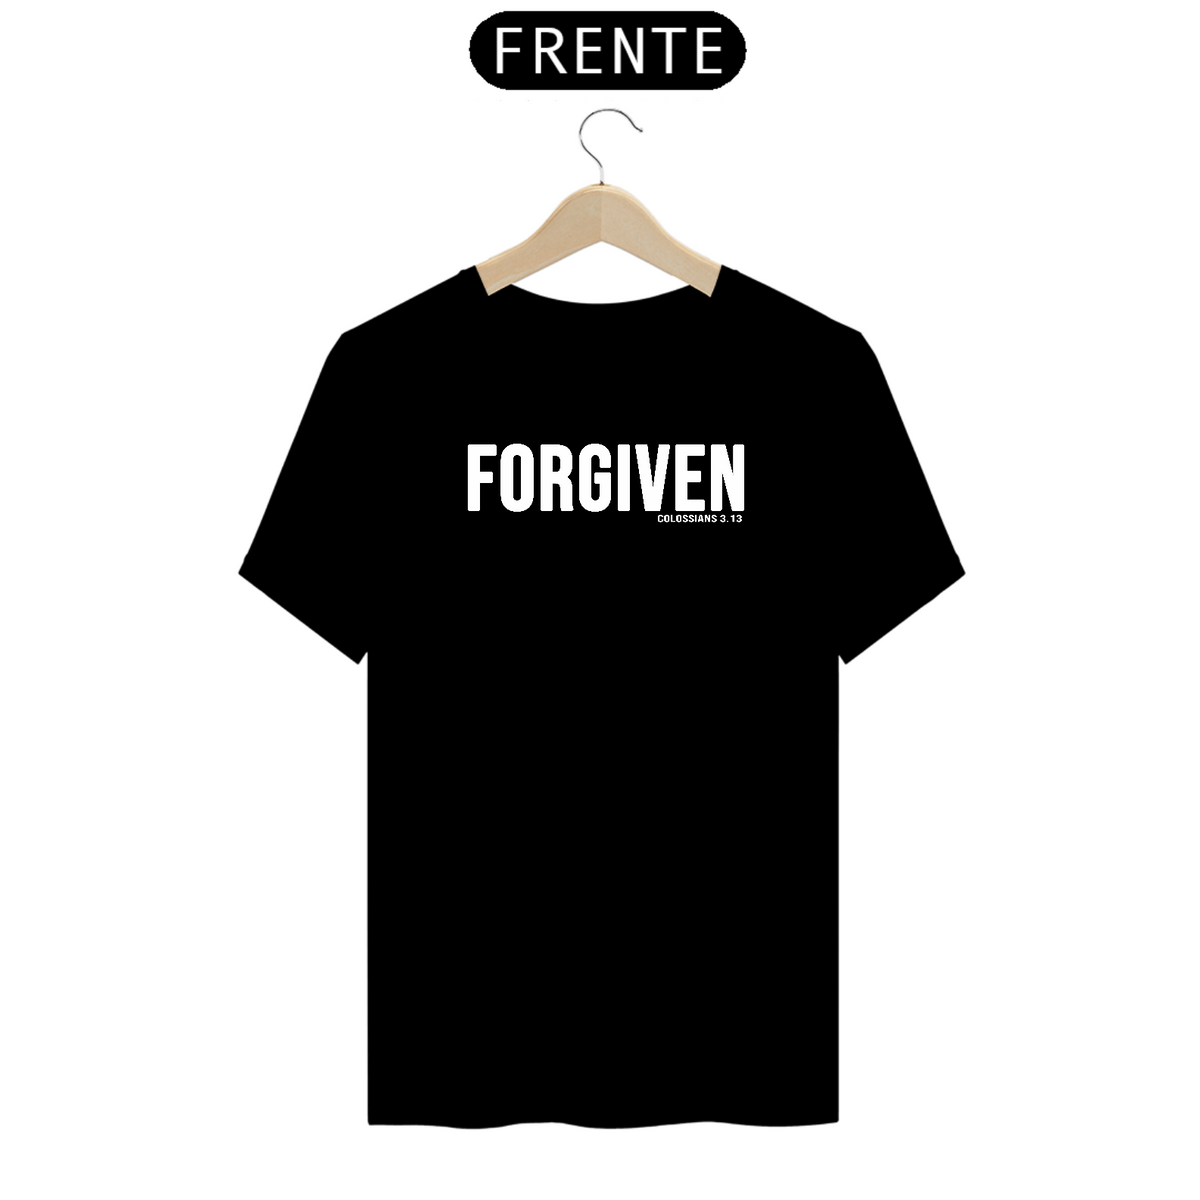 Nome do produto: Camiseta Forgiven